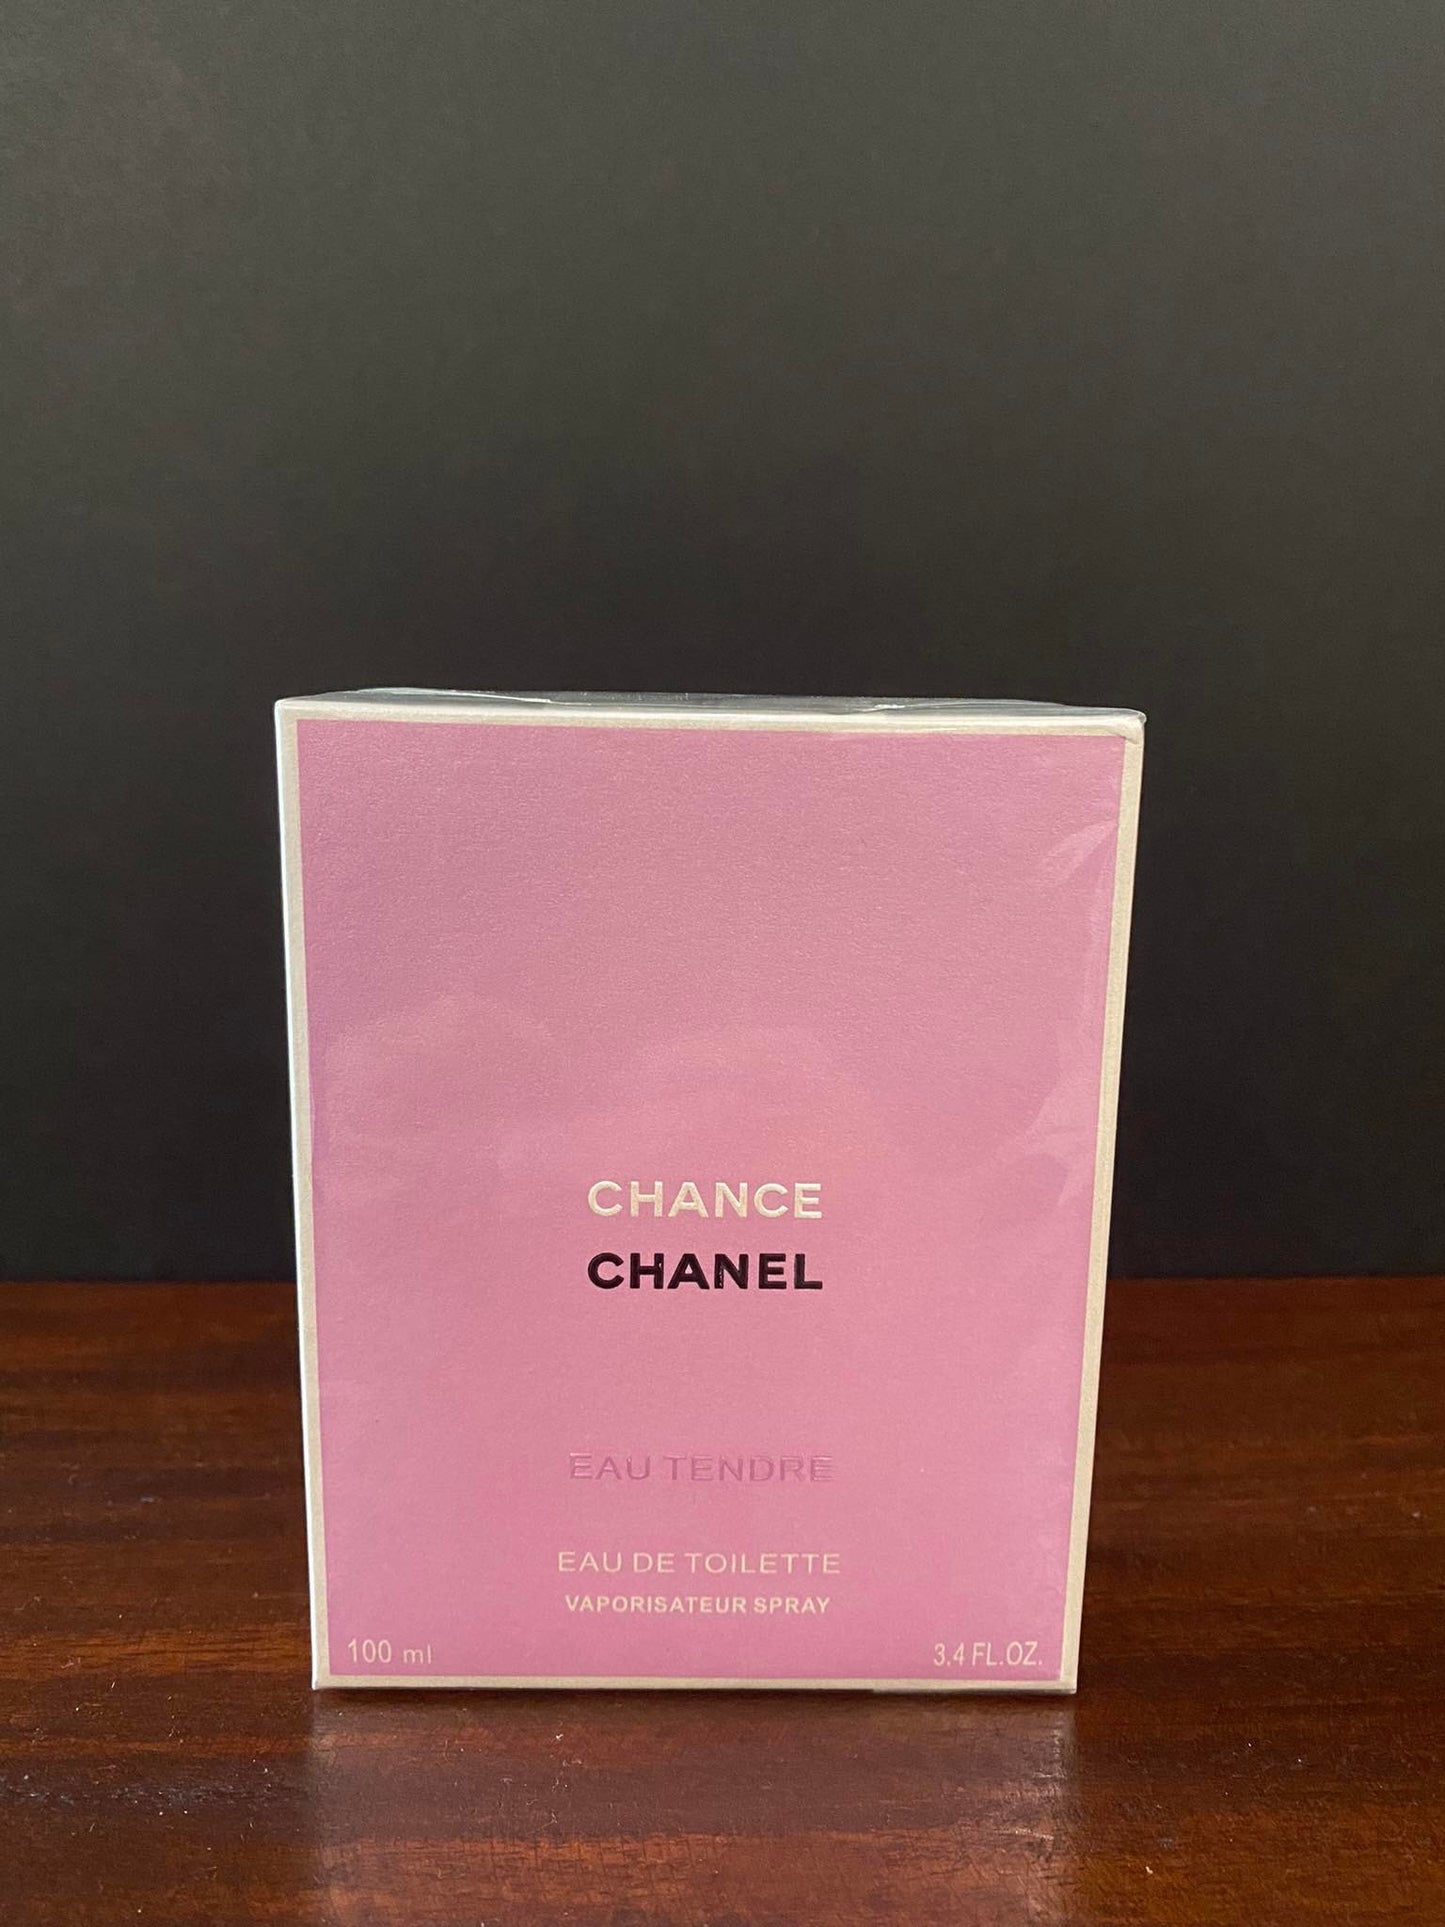 Chanel - Chance Eau Tendre Eau De Toilette Spray 50ml/1.7oz - Eau